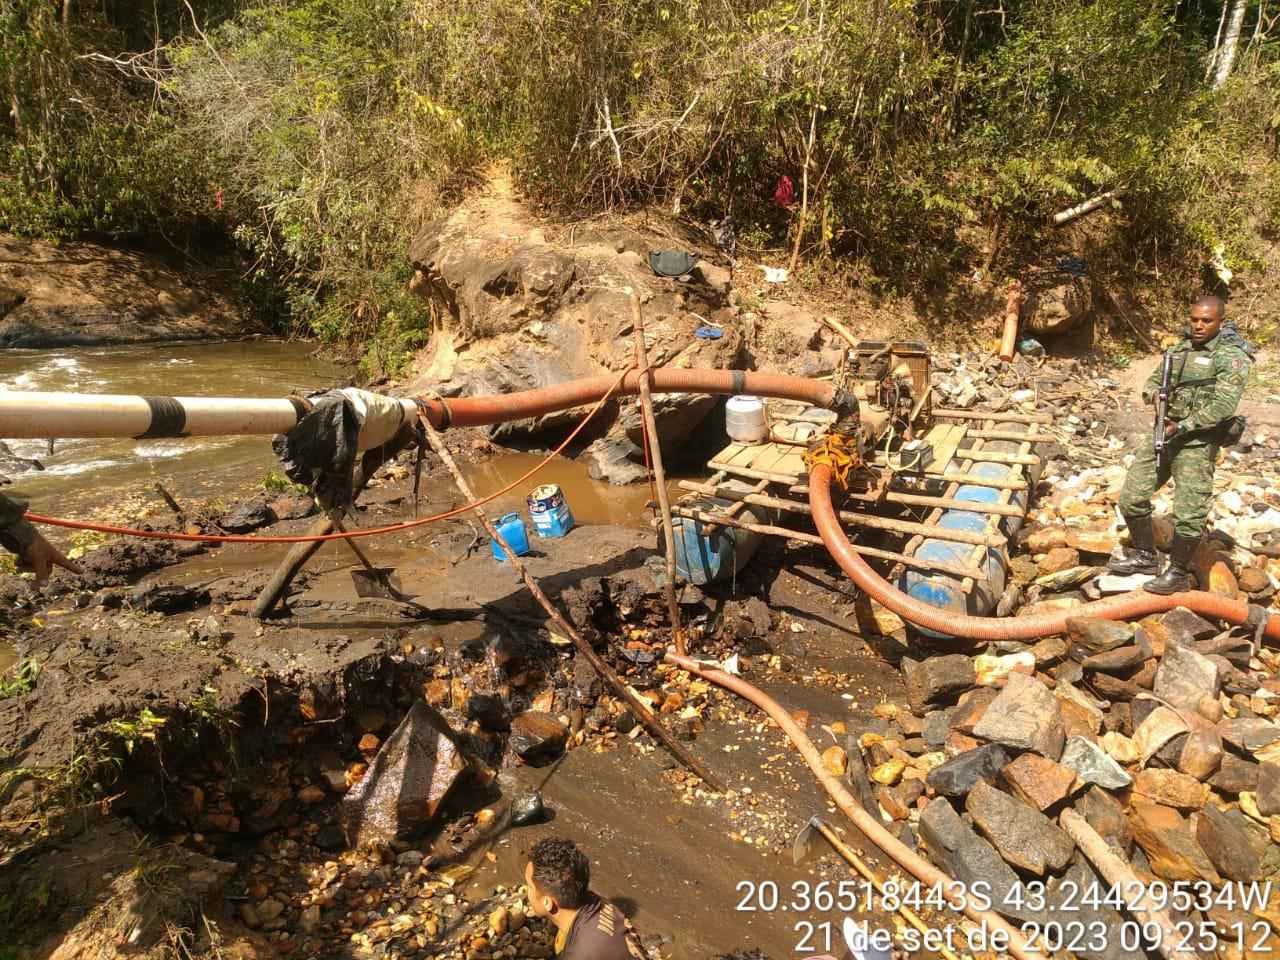 Grupo que minerava ilegalmente ouro é preso em rio próximo de Mariana - Polícia Militar Ambiental/Divulgação